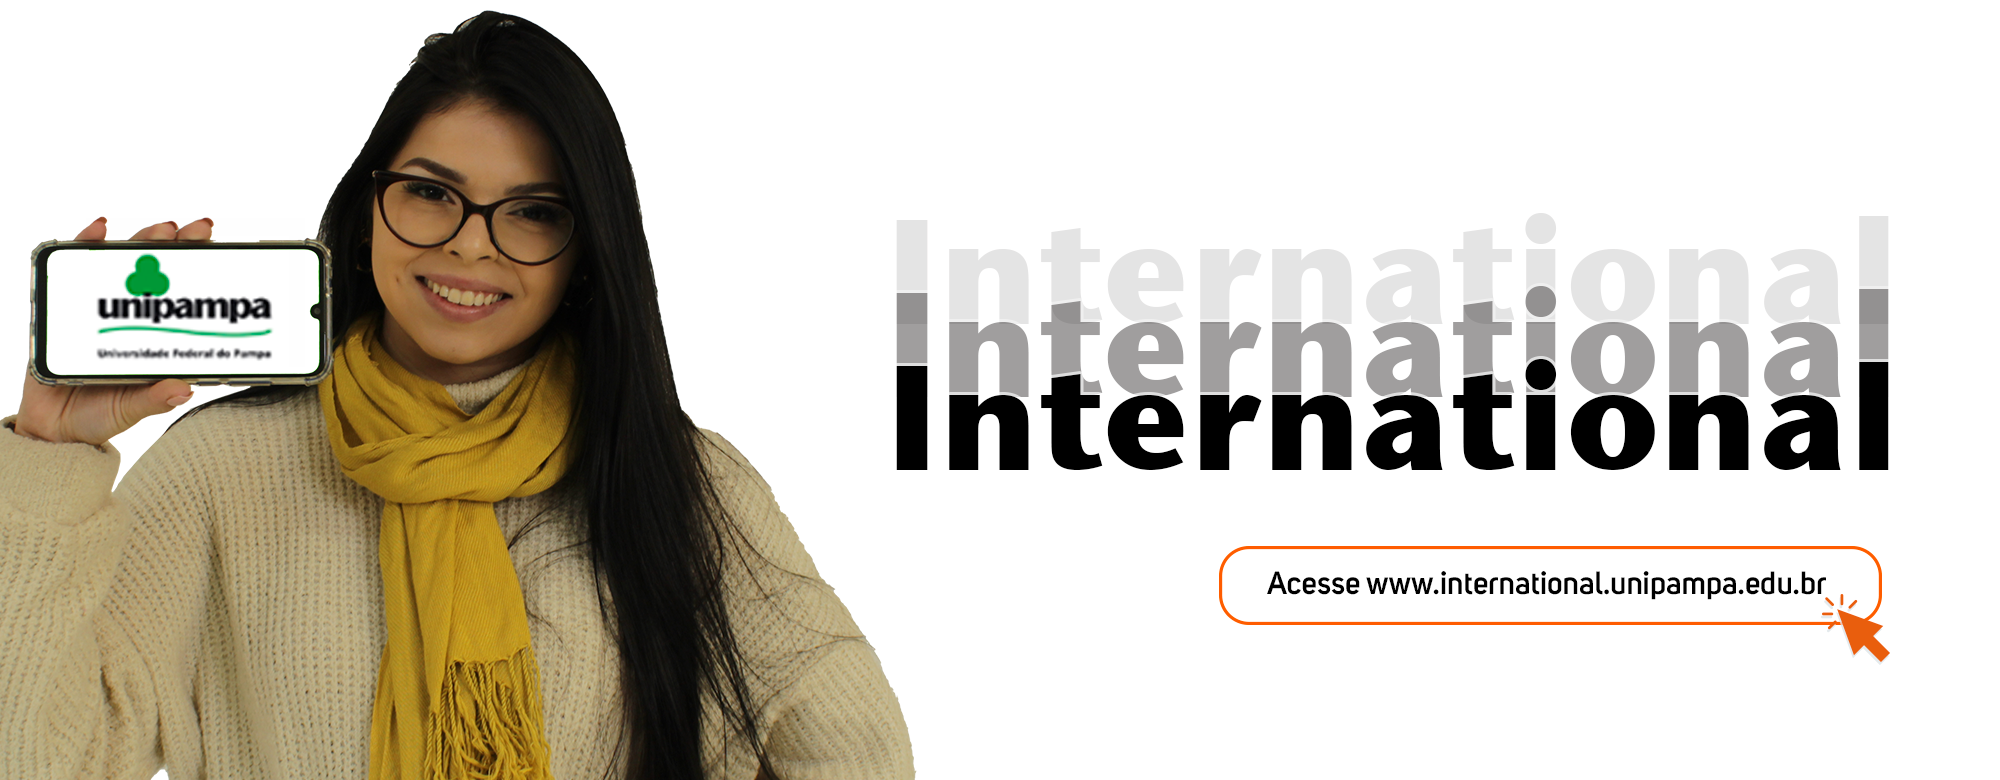 Uma estudante segura um smartphone mostrando a logo da Unipampa. Ao lado, a palavra "international".